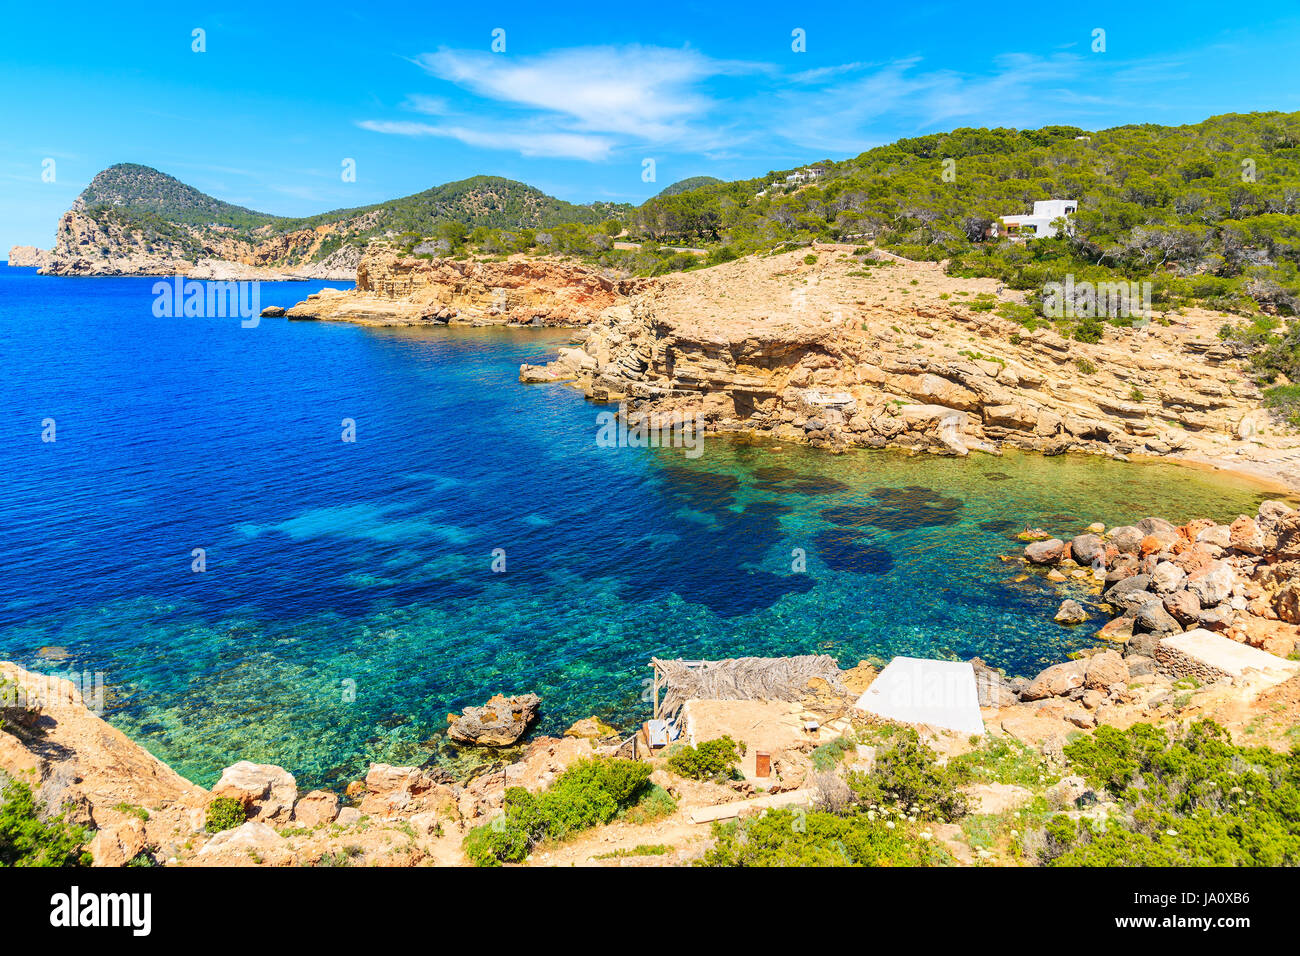 L'eau de mer bleue de Punta Galera baie entourée de formations de pierre incroyable, l'île d'Ibiza, Espagne Banque D'Images